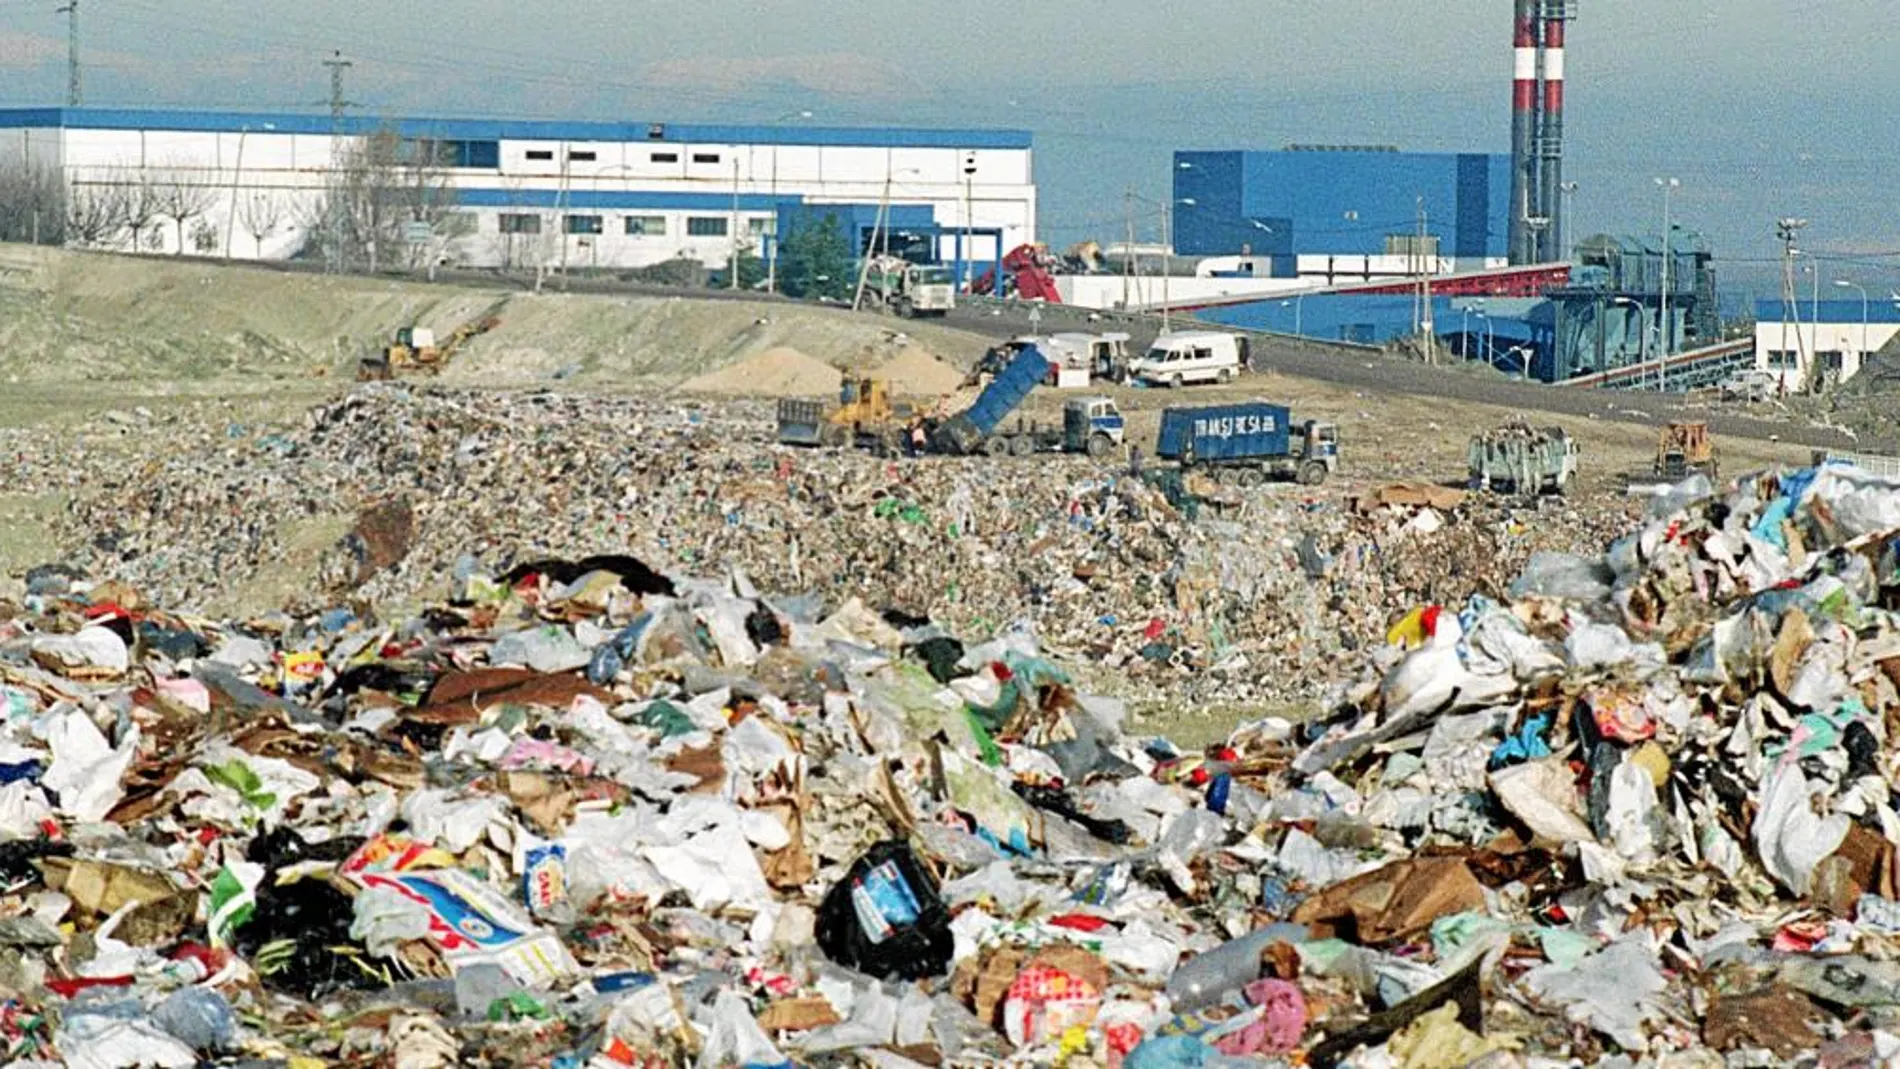 El vertedero de Valdemingómez tendrá que soportar alrededor de 200.000 toneladas más de basura